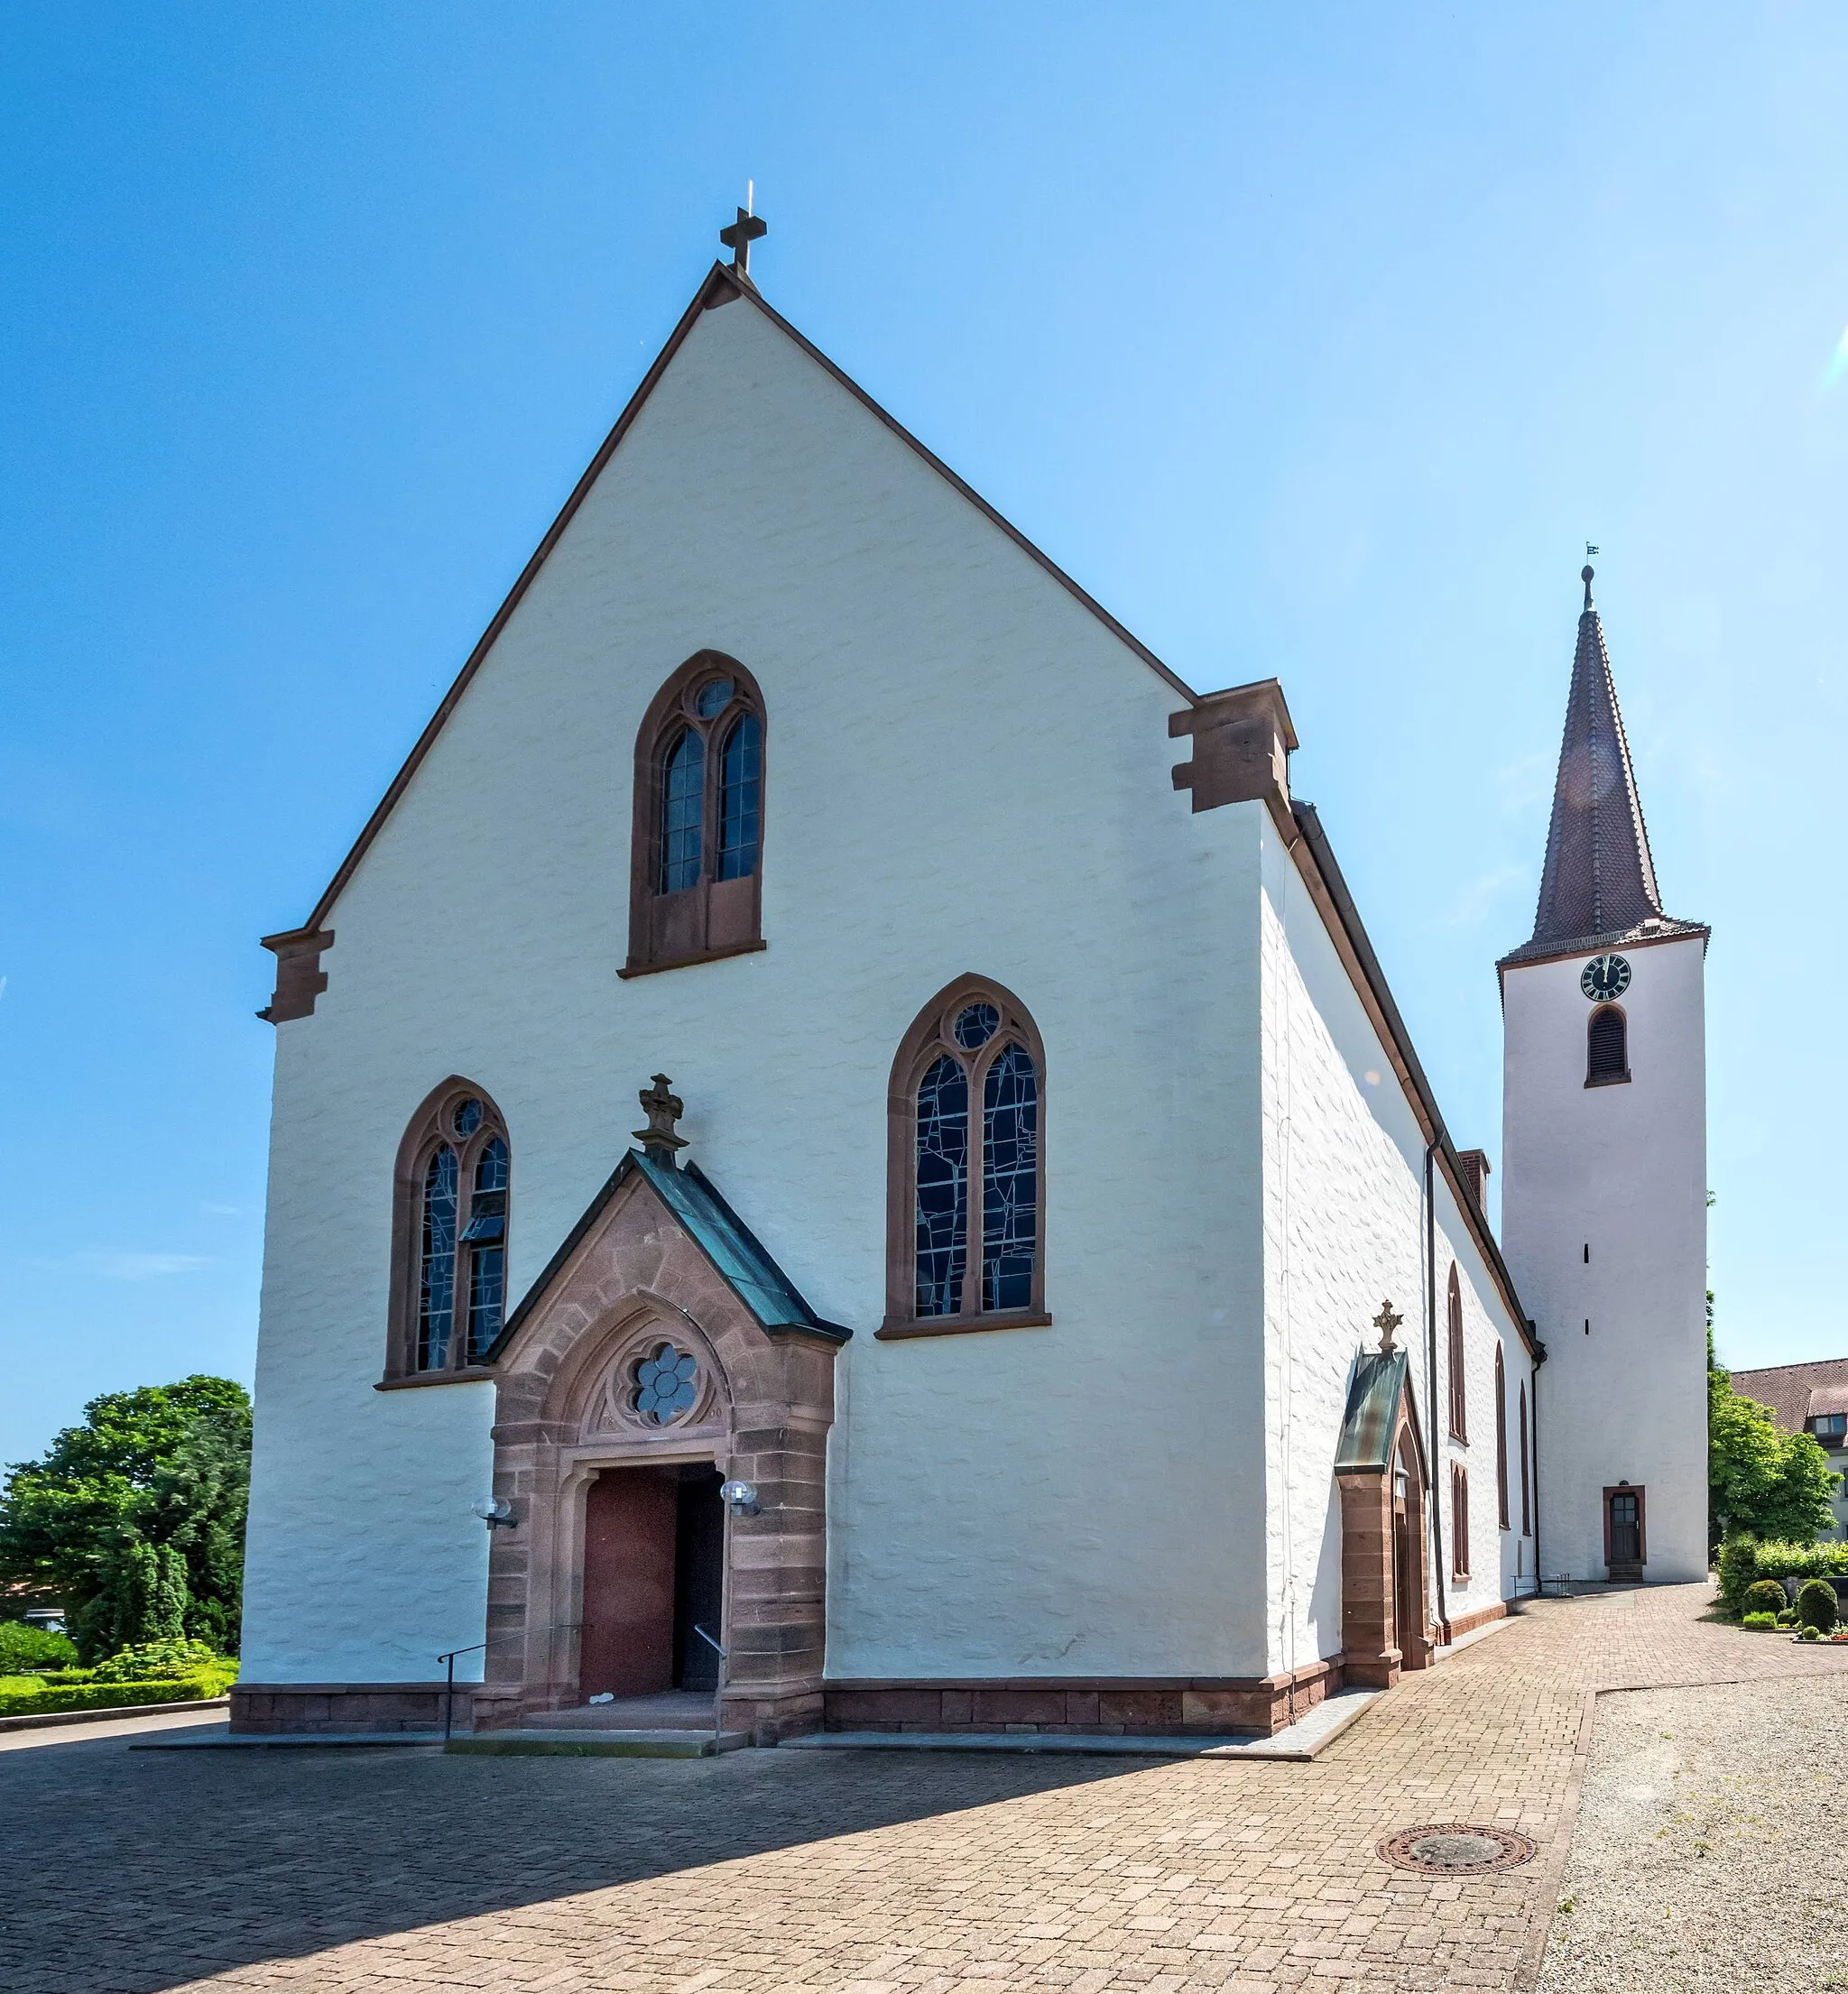 Photo showing: Bilder der evangelischen Kirche in Wolfenweiler

Die Kirche von Westen mit Haupteingang